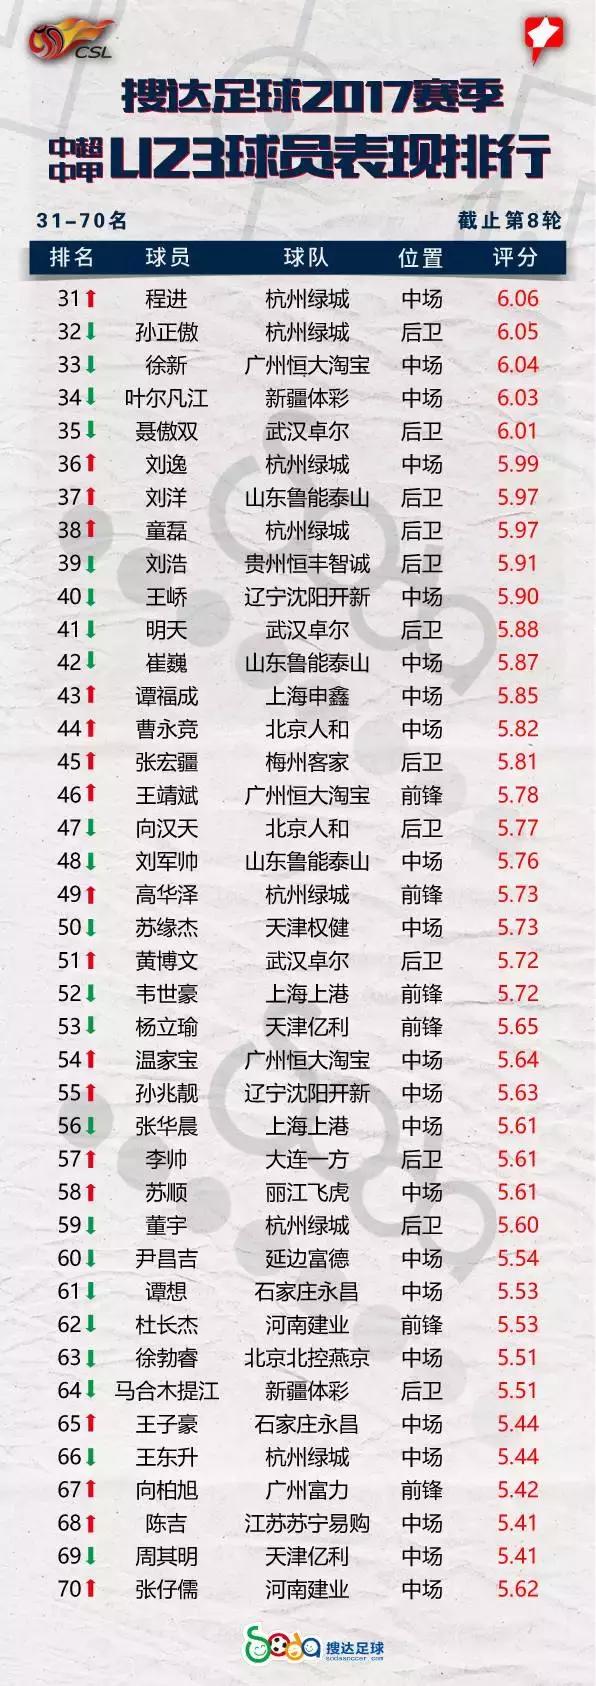 刘若钒中超进球数 中超U23球员进球数达到6个(3)